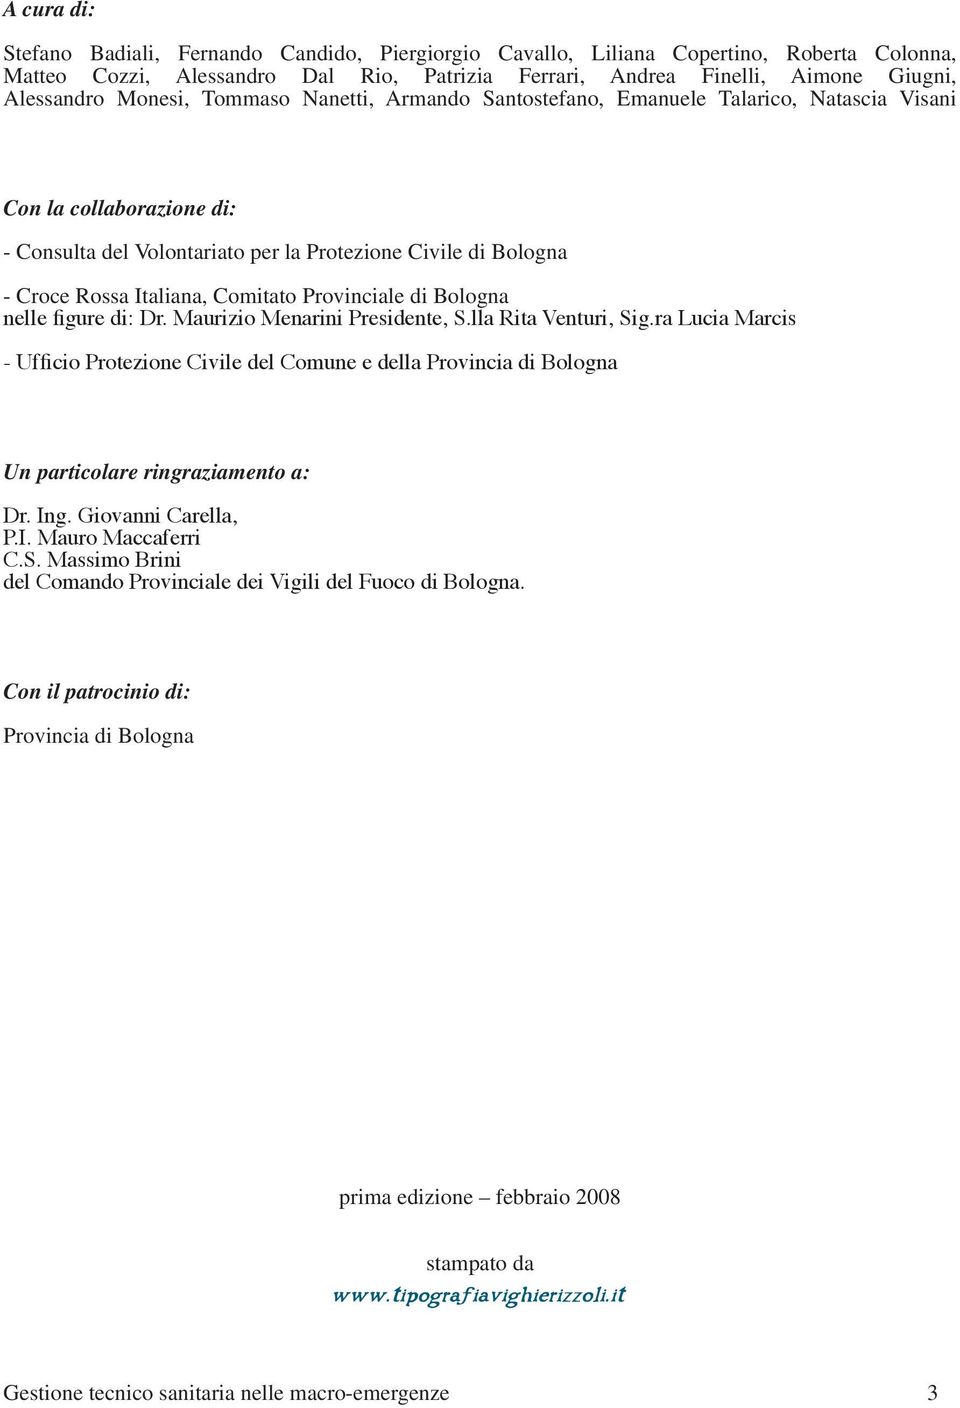 Comitato Provinciale di Bologna nelle figure di: Dr. Maurizio Menarini Presidente, S.lla Rita Venturi, Sig.